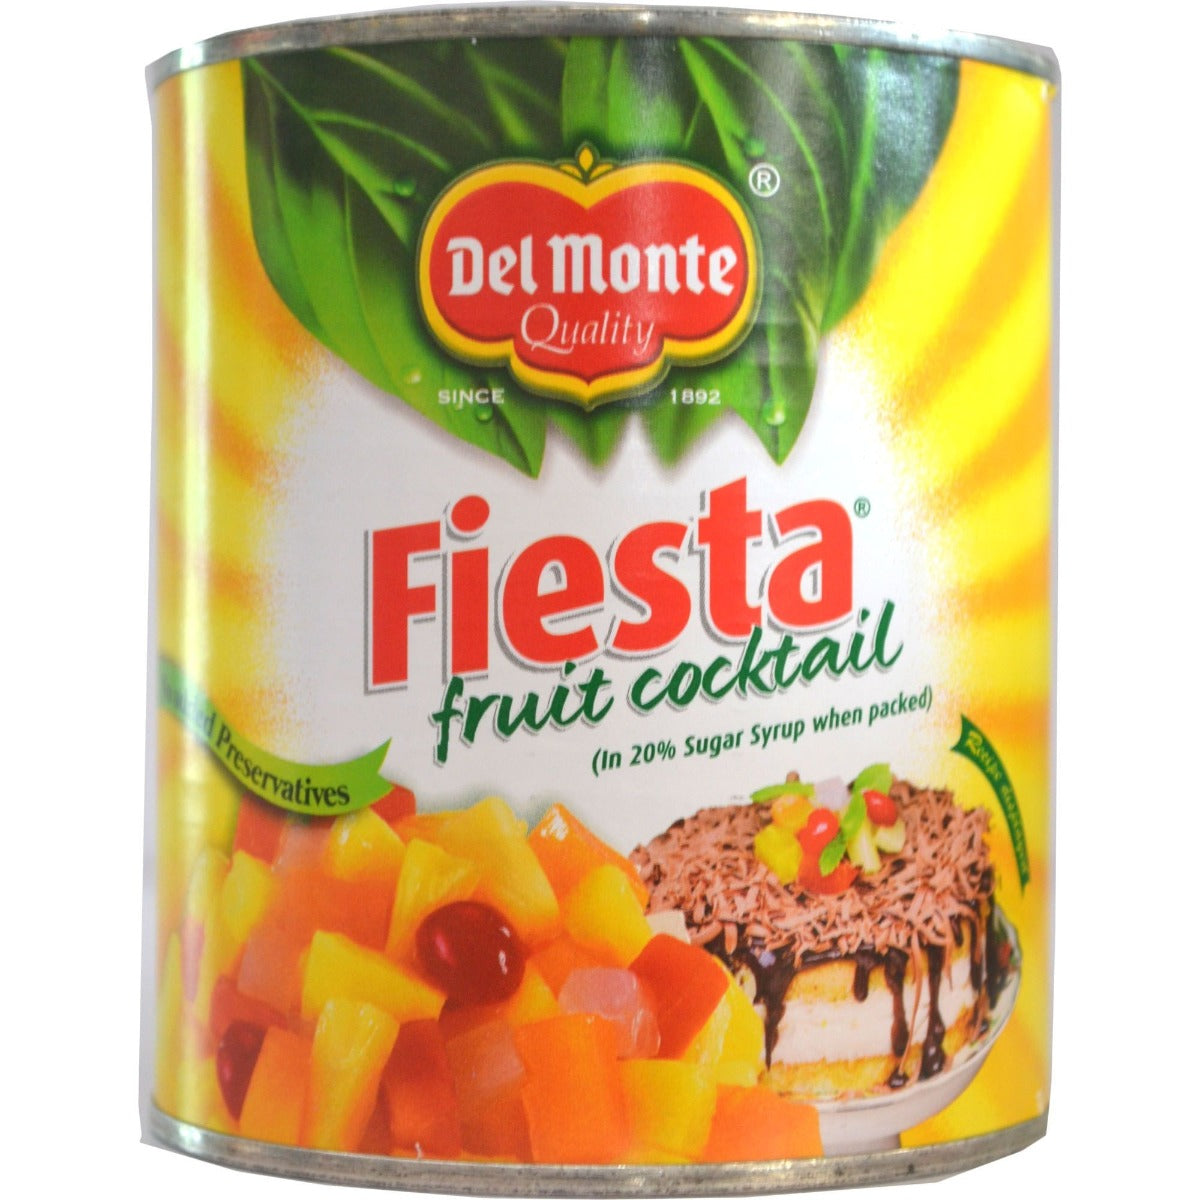 DEL MONTE: Fiesta Fruit Cocktail, 30 oz - Vending Business Solutions